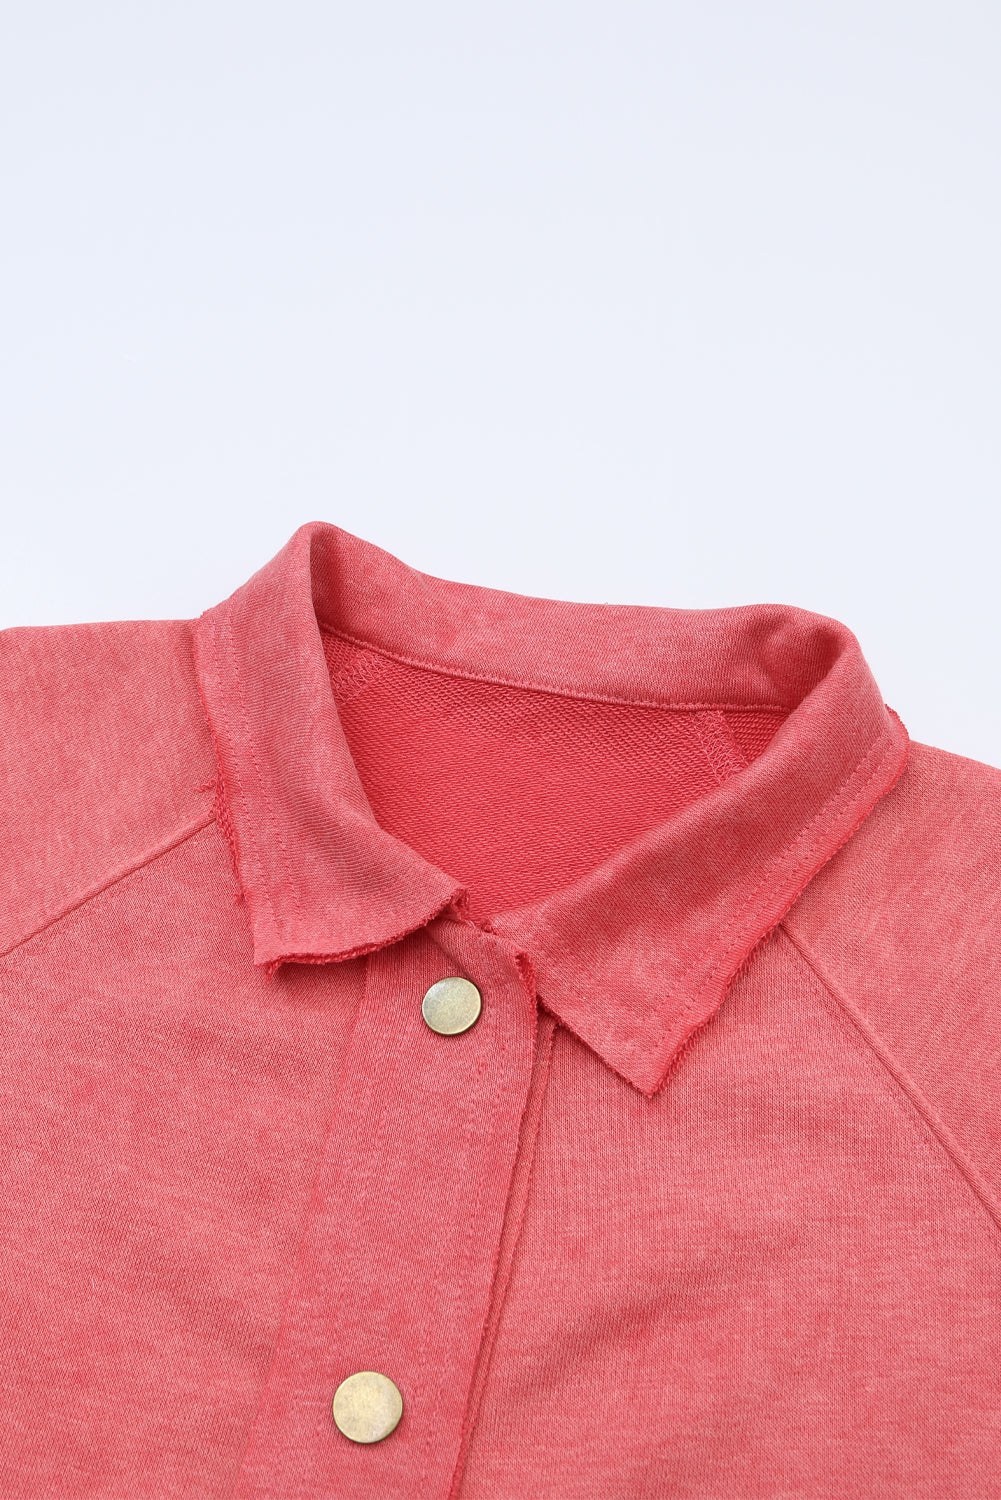 Feurige rote Vintage-Hemdjacke mit verwaschener Pattentasche und Knöpfen